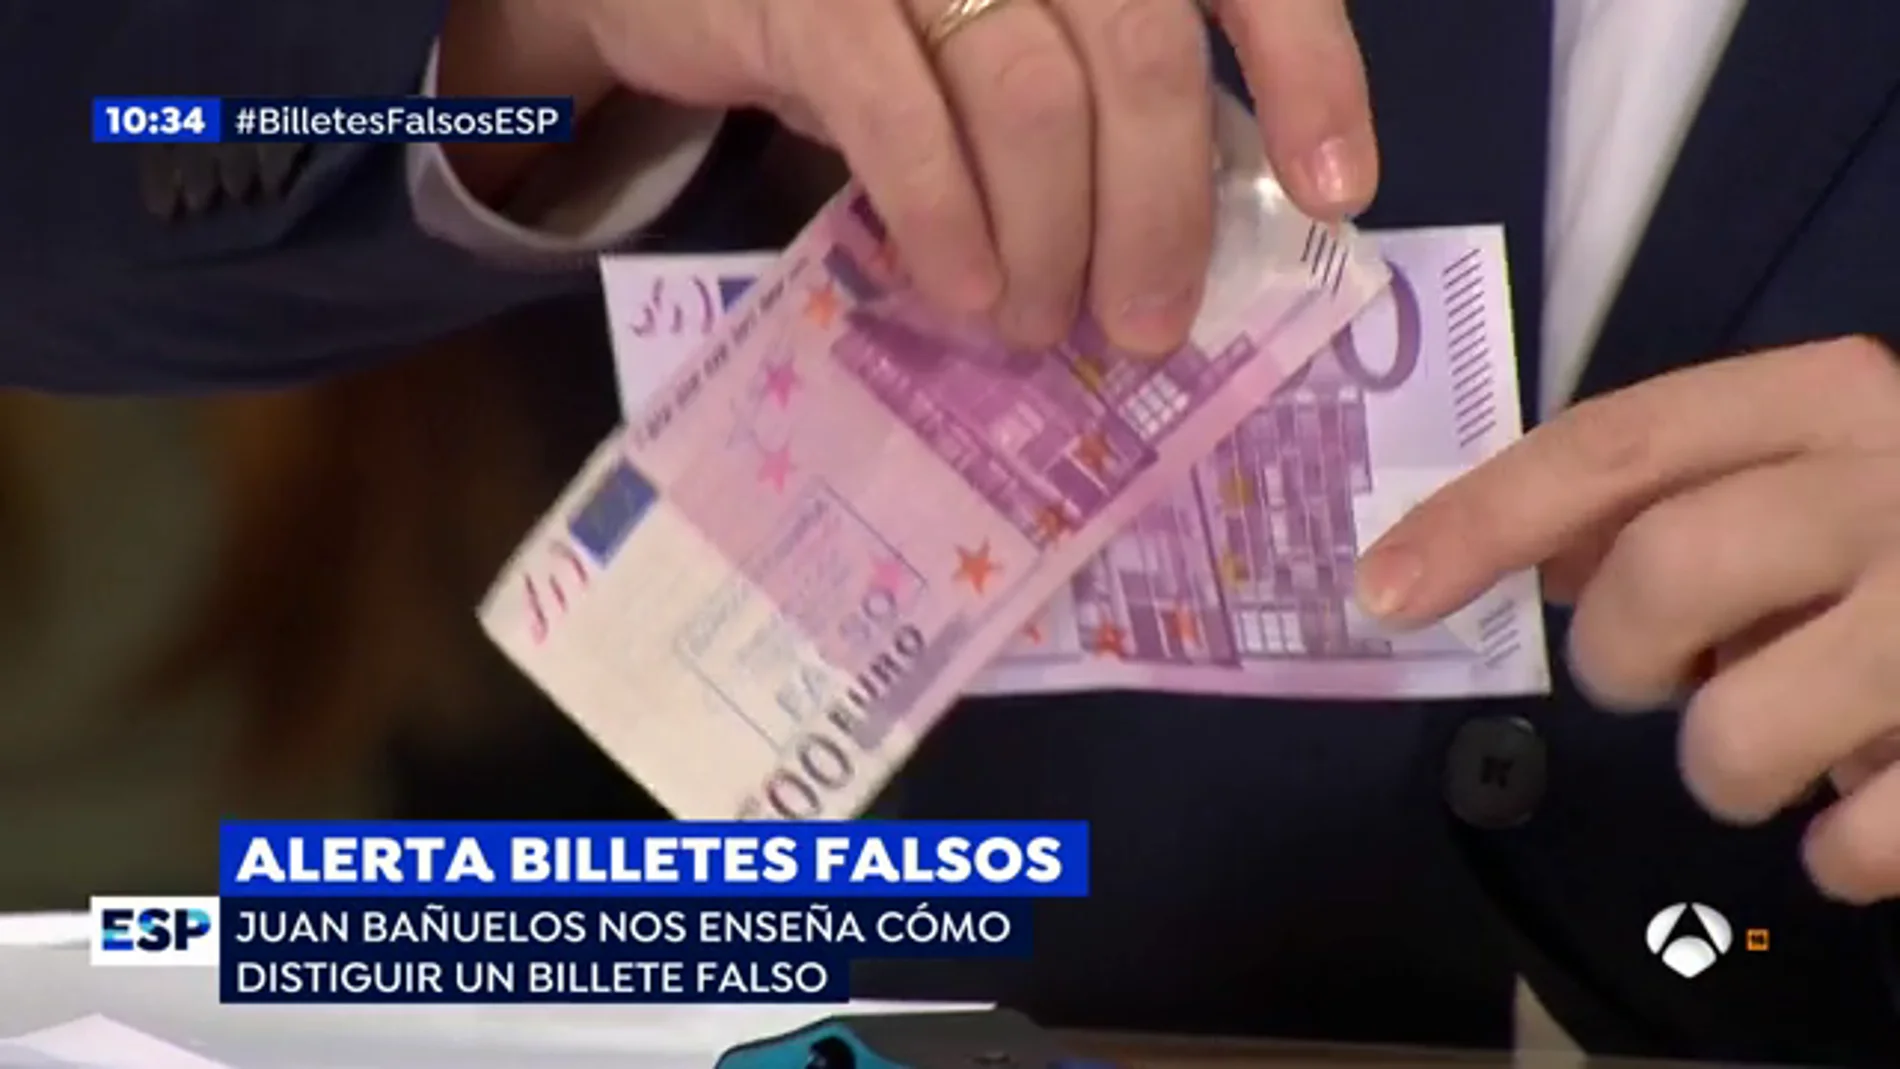 Juan Bañuelos, jefe de la brigada de falsificaciones del banco de España, muestra las clave para detectar los billetes falsos: "Mirar, tocar y girar"